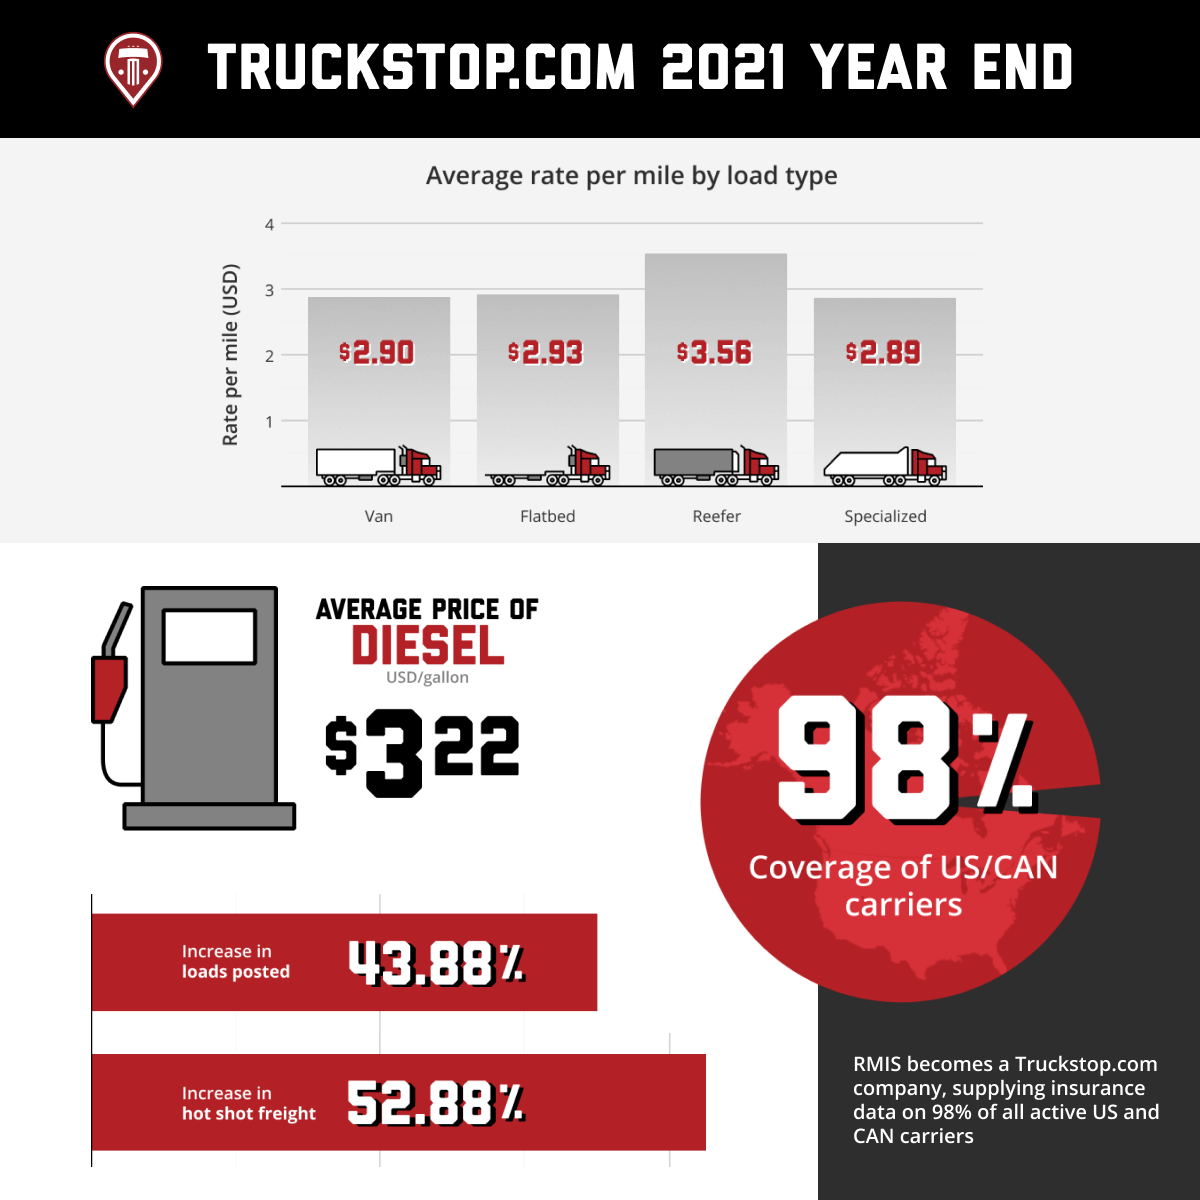 Truckstp.com 2021 Year End